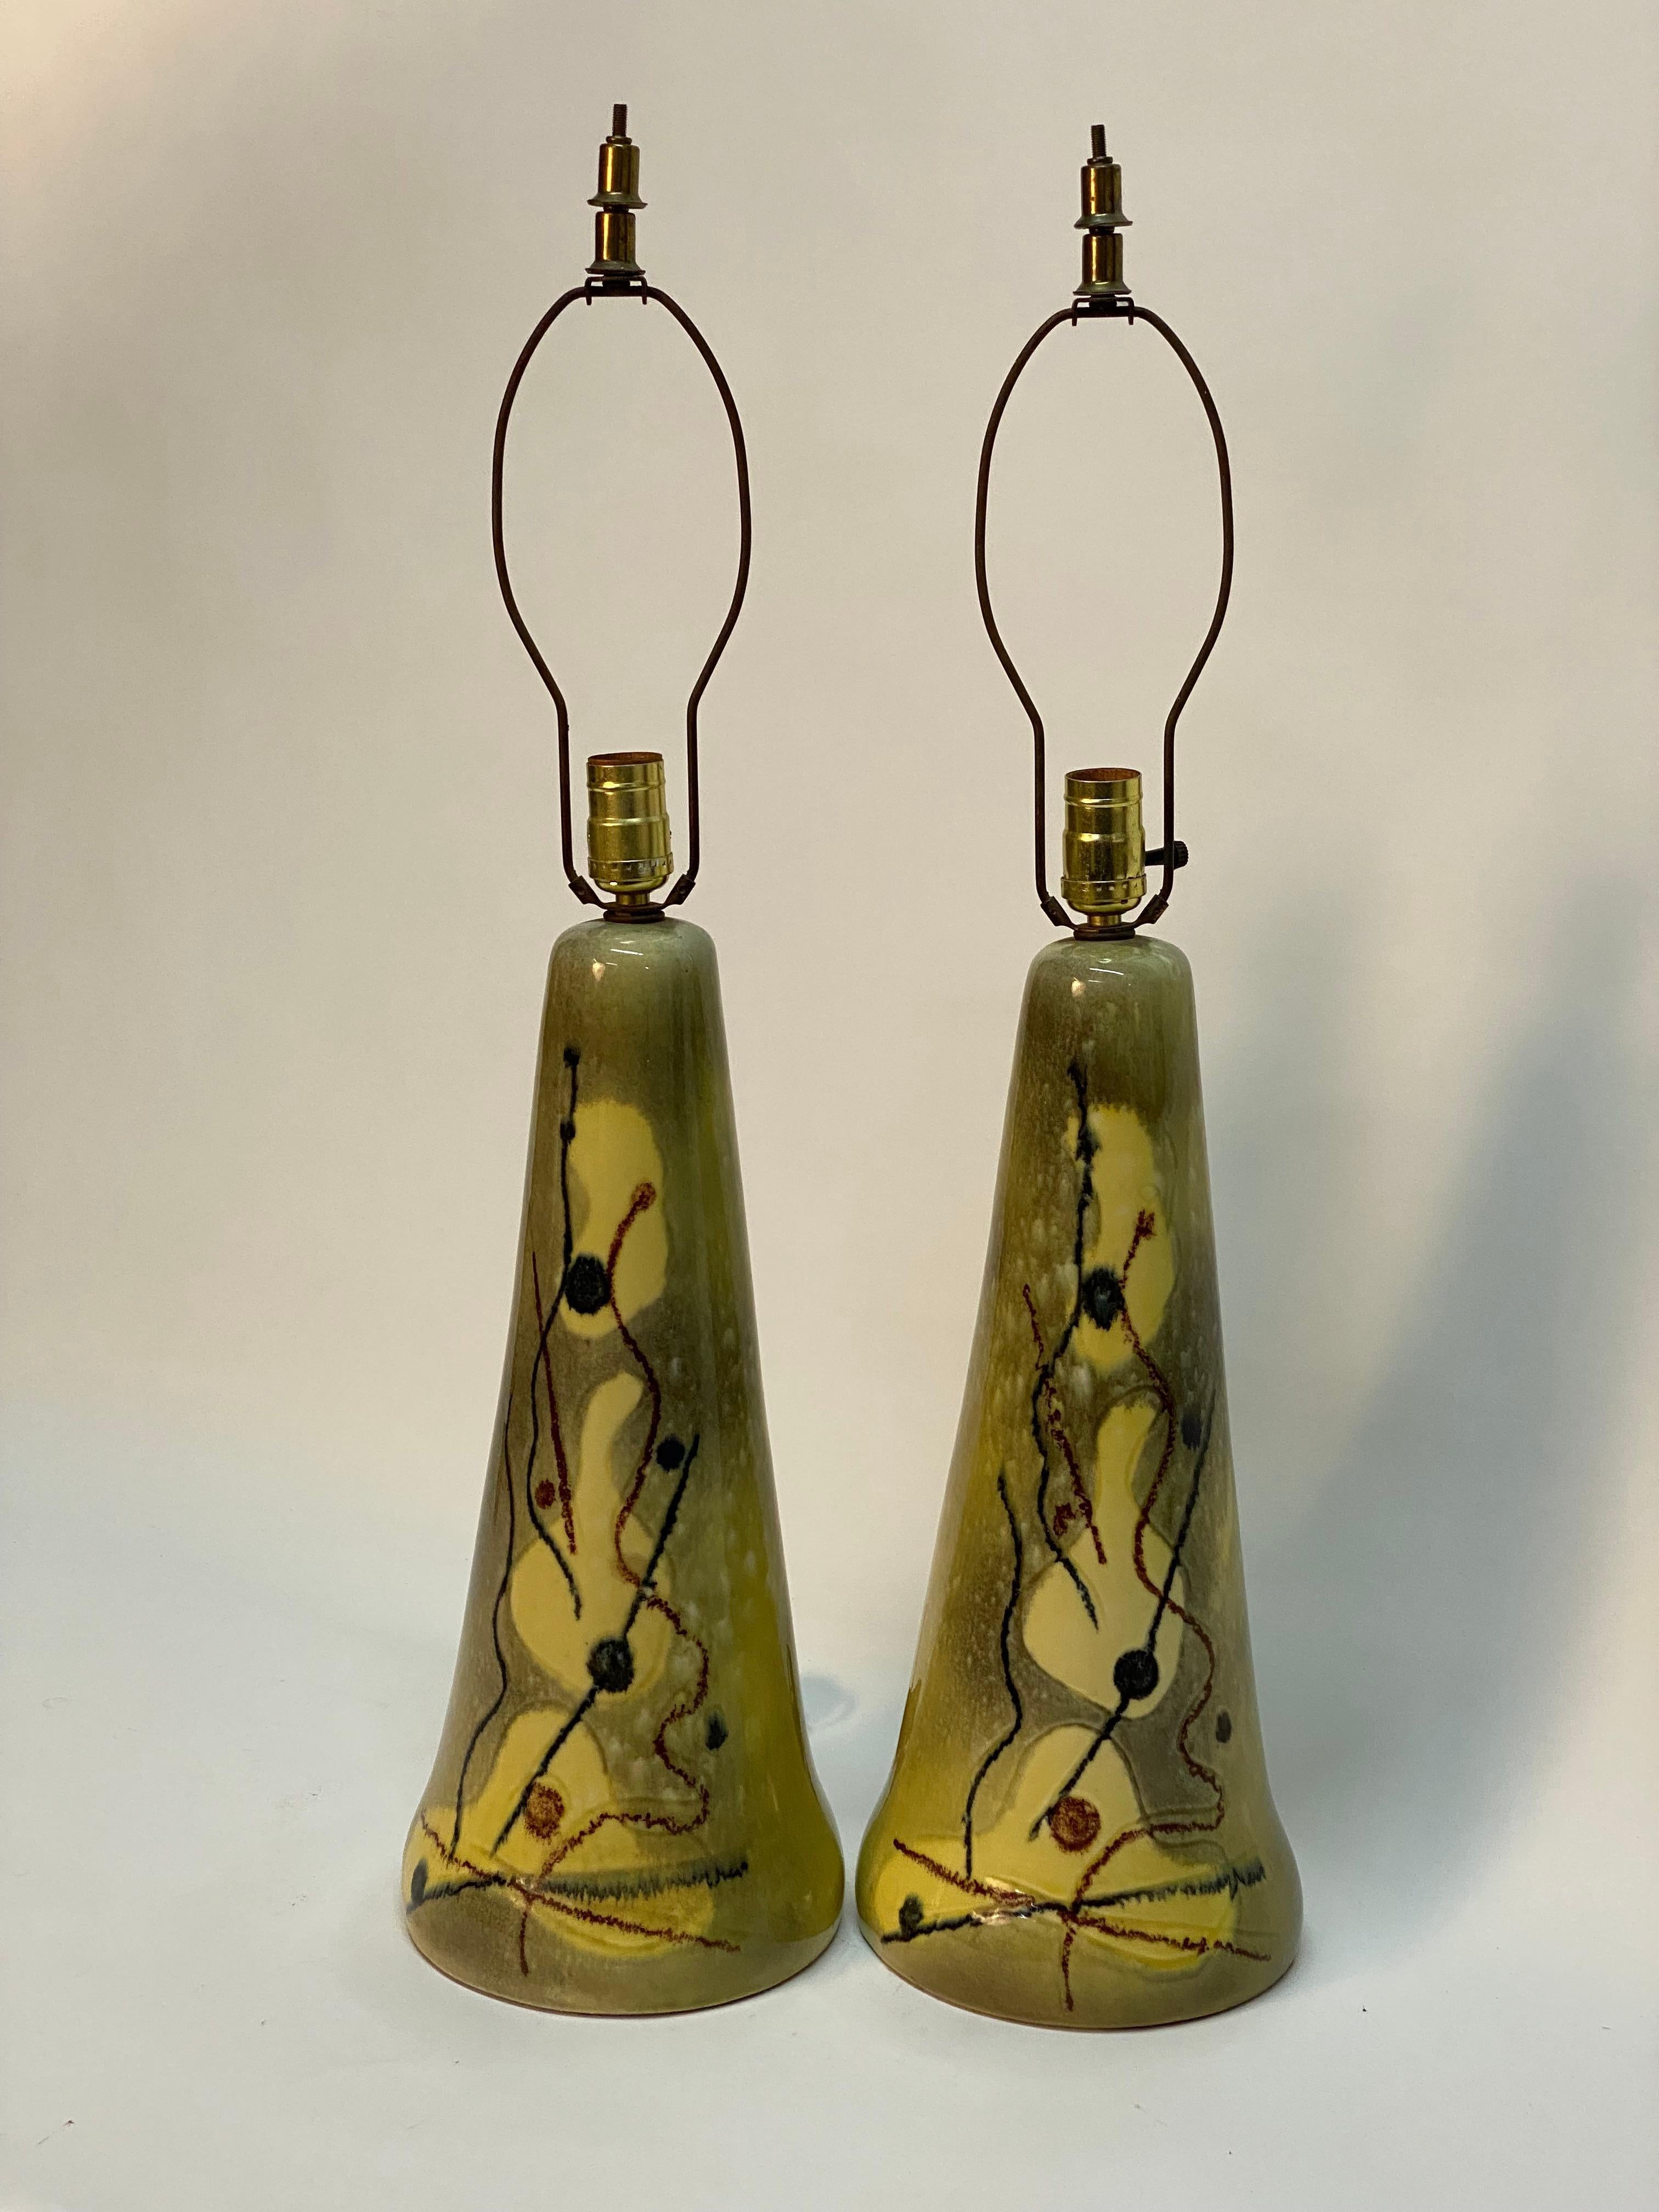 Ein schickes Paar abstrakt dekorierter Keramik-Tischlampen aus den 1950er Jahren in der Art von Yasha Heifetz oder Marianna Von Allesch. Hochglänzende Chartreuse-Glasur mit einem biomorphen, abstrakten Motiv auf einem konisch zulaufenden,